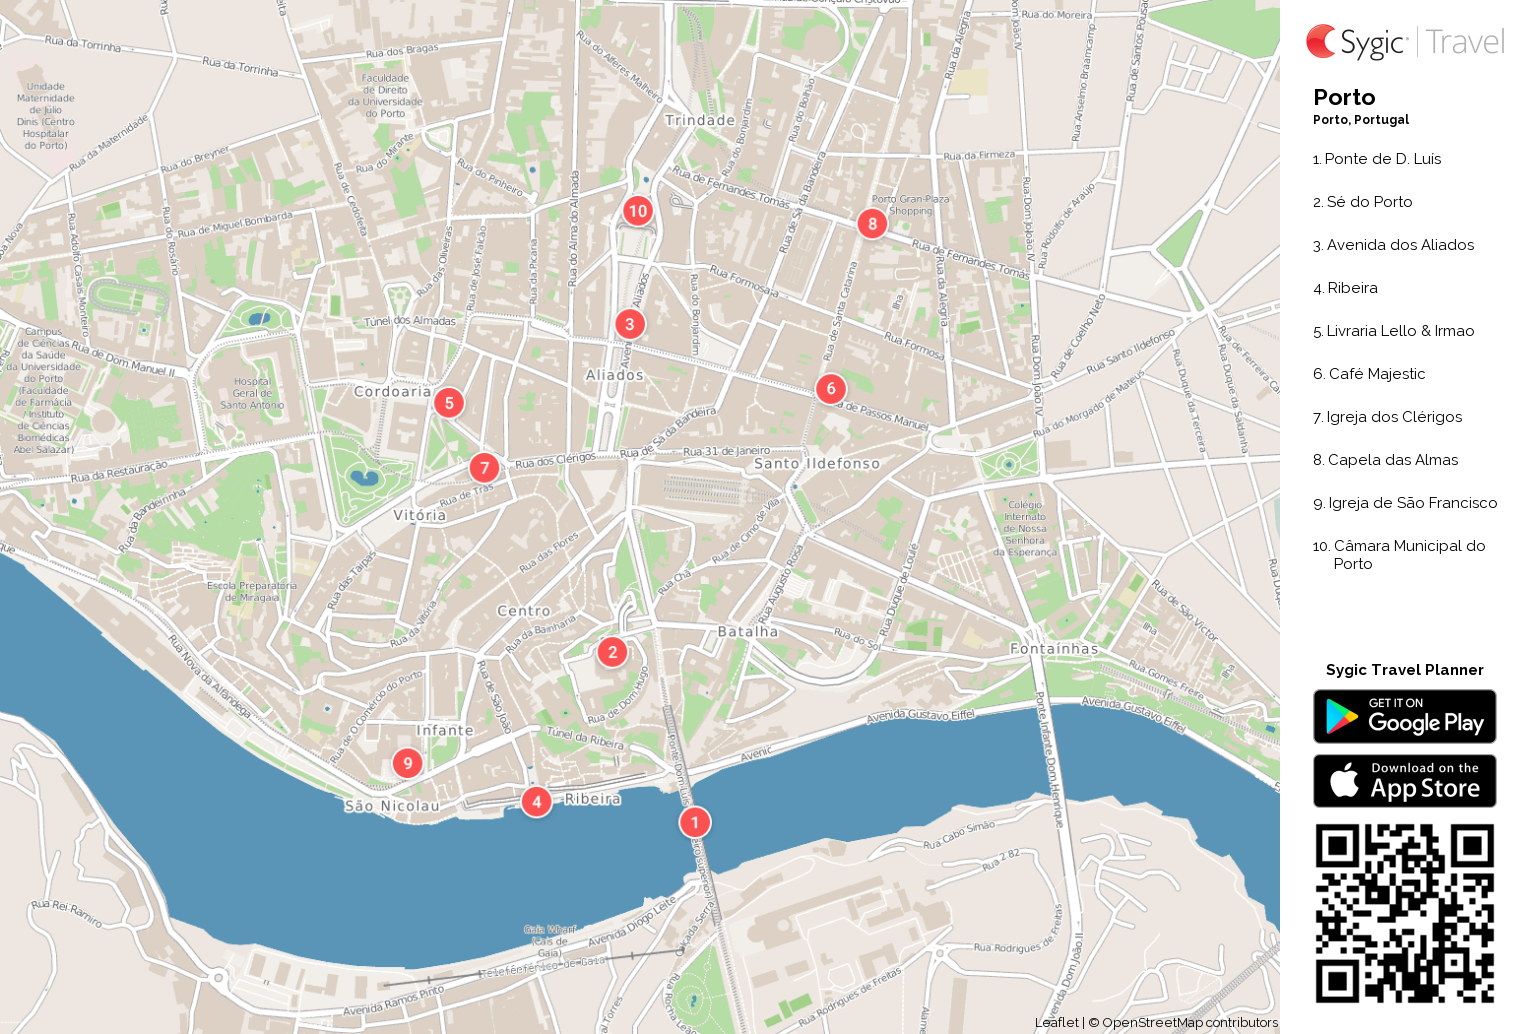 Mapa Turístico Porto e Norte - Infoportugal - Sistemas de Informação e  Conteúdos